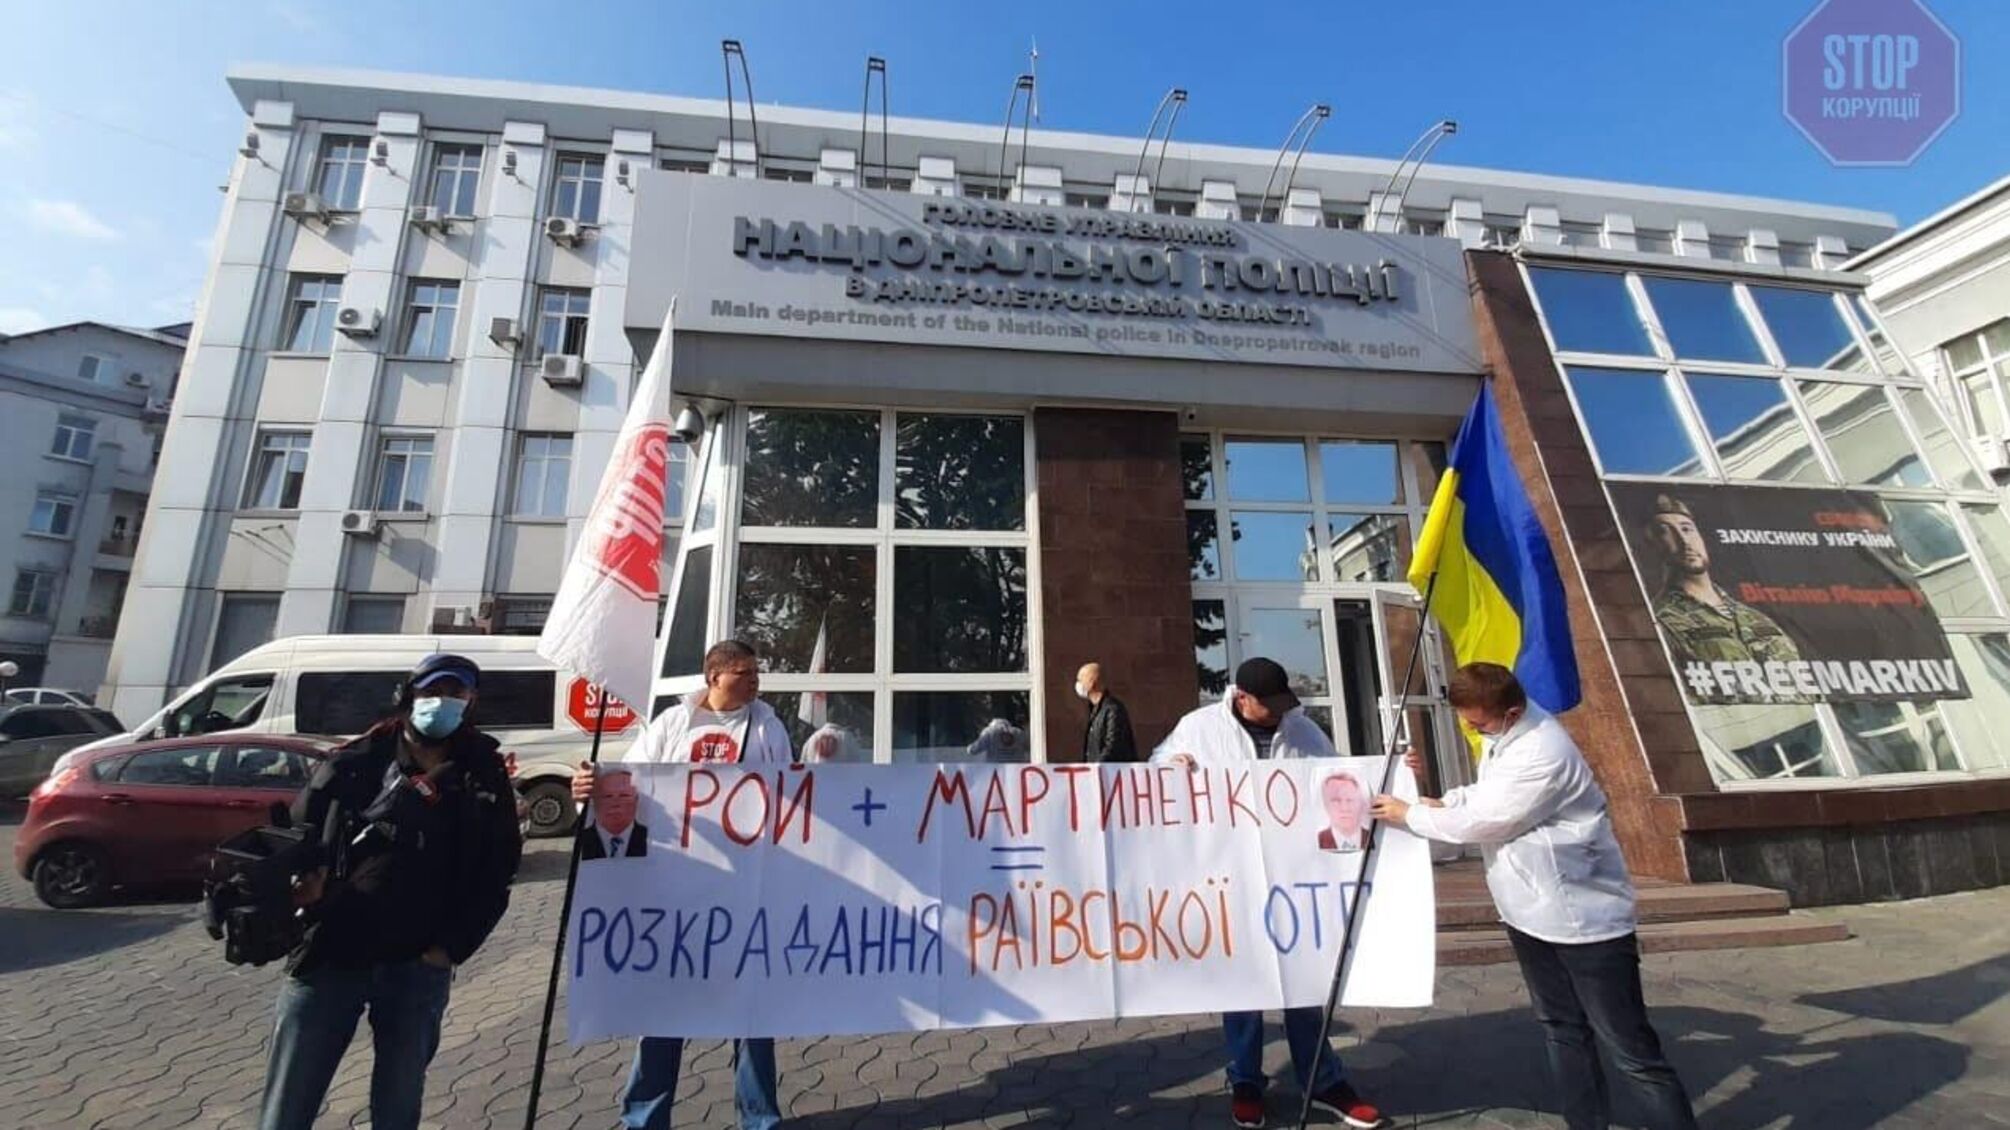 Рой+Мартиненко=ОЗУ: під поліцією Дніпропетровщини – акція проти розкрадання ОТГ